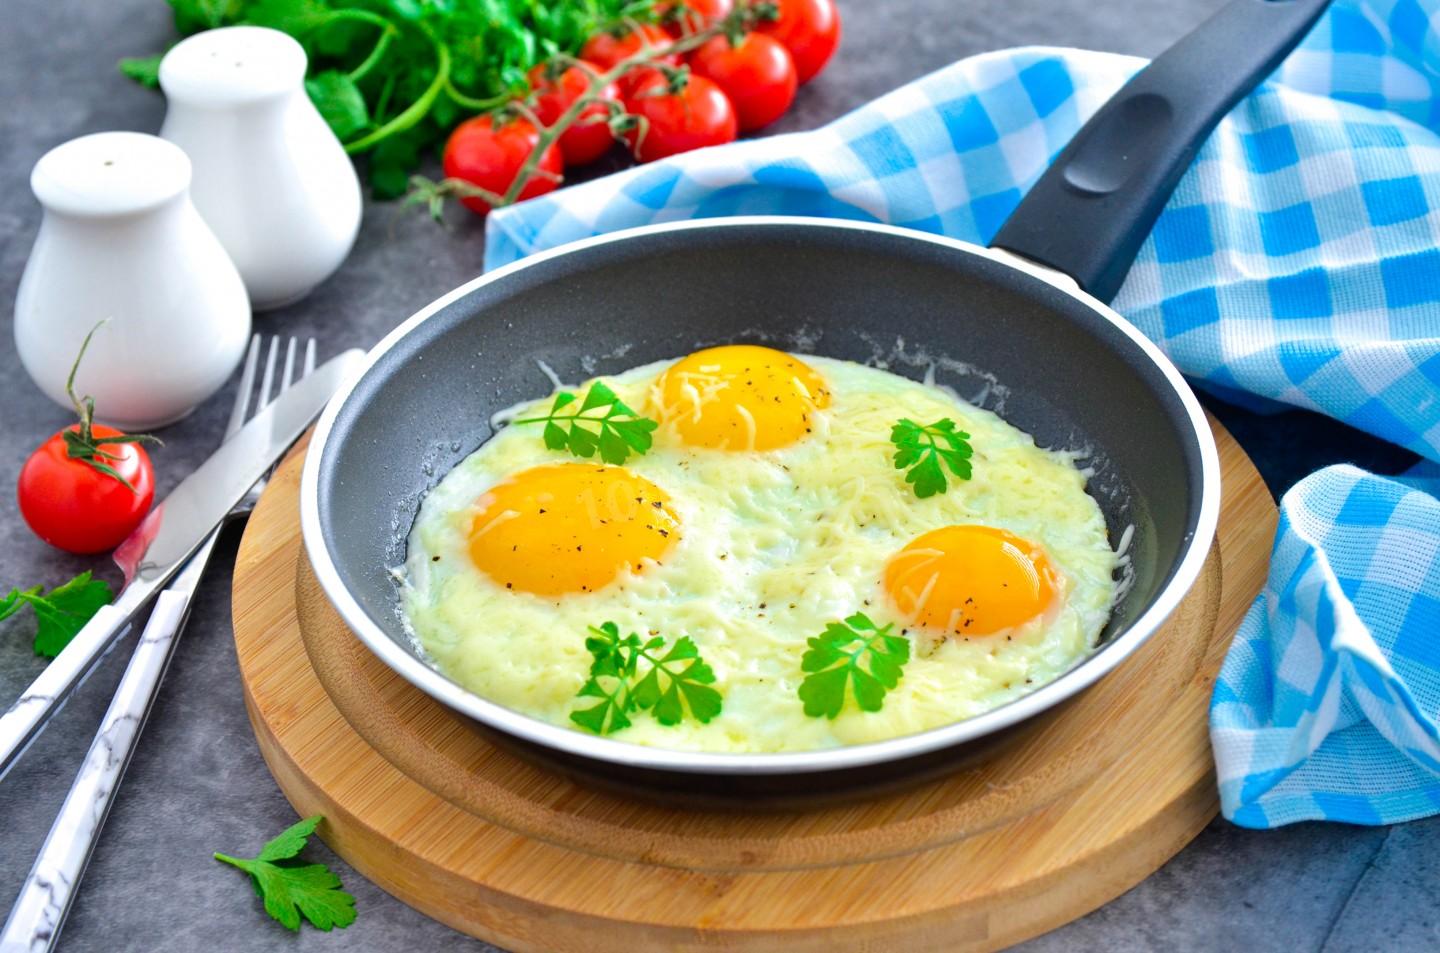 Пушистая и аппетитная — идеальная яичница на сковороде за 5 минут! Пошаговый рецепт и секреты приготовления для настоящих гурманов